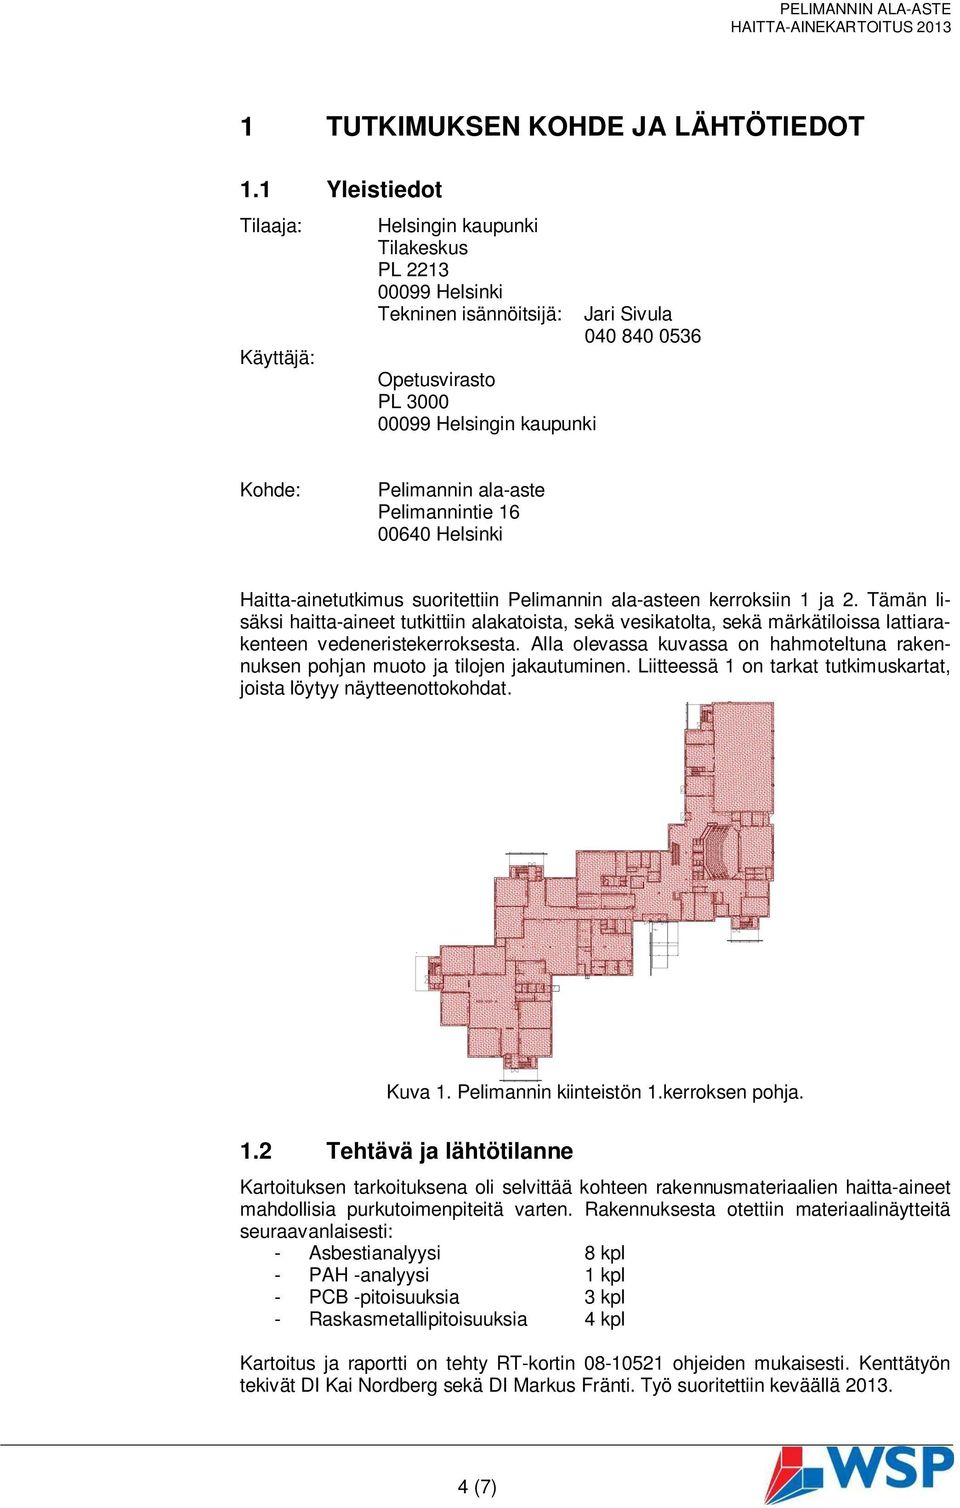 ala-aste Pelimannintie 16 00640 Helsinki Haitta-ainetutkimus suoritettiin Pelimannin ala-asteen kerroksiin 1 ja 2.